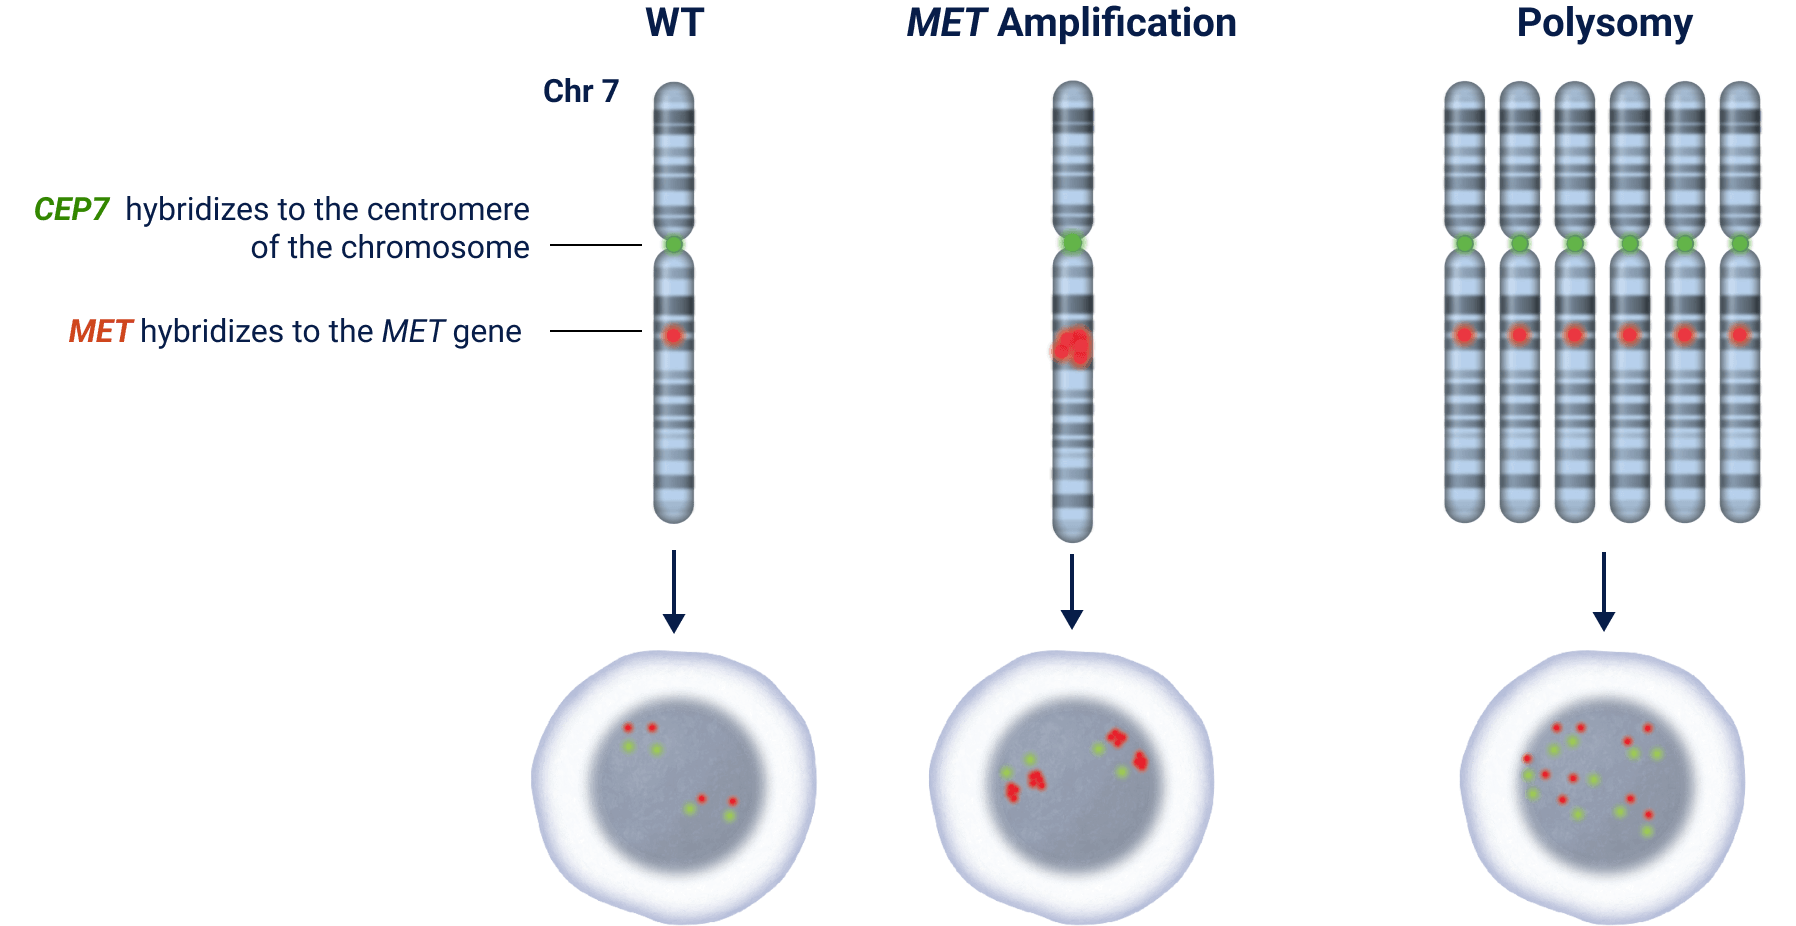 FISH MET Gene Amplification